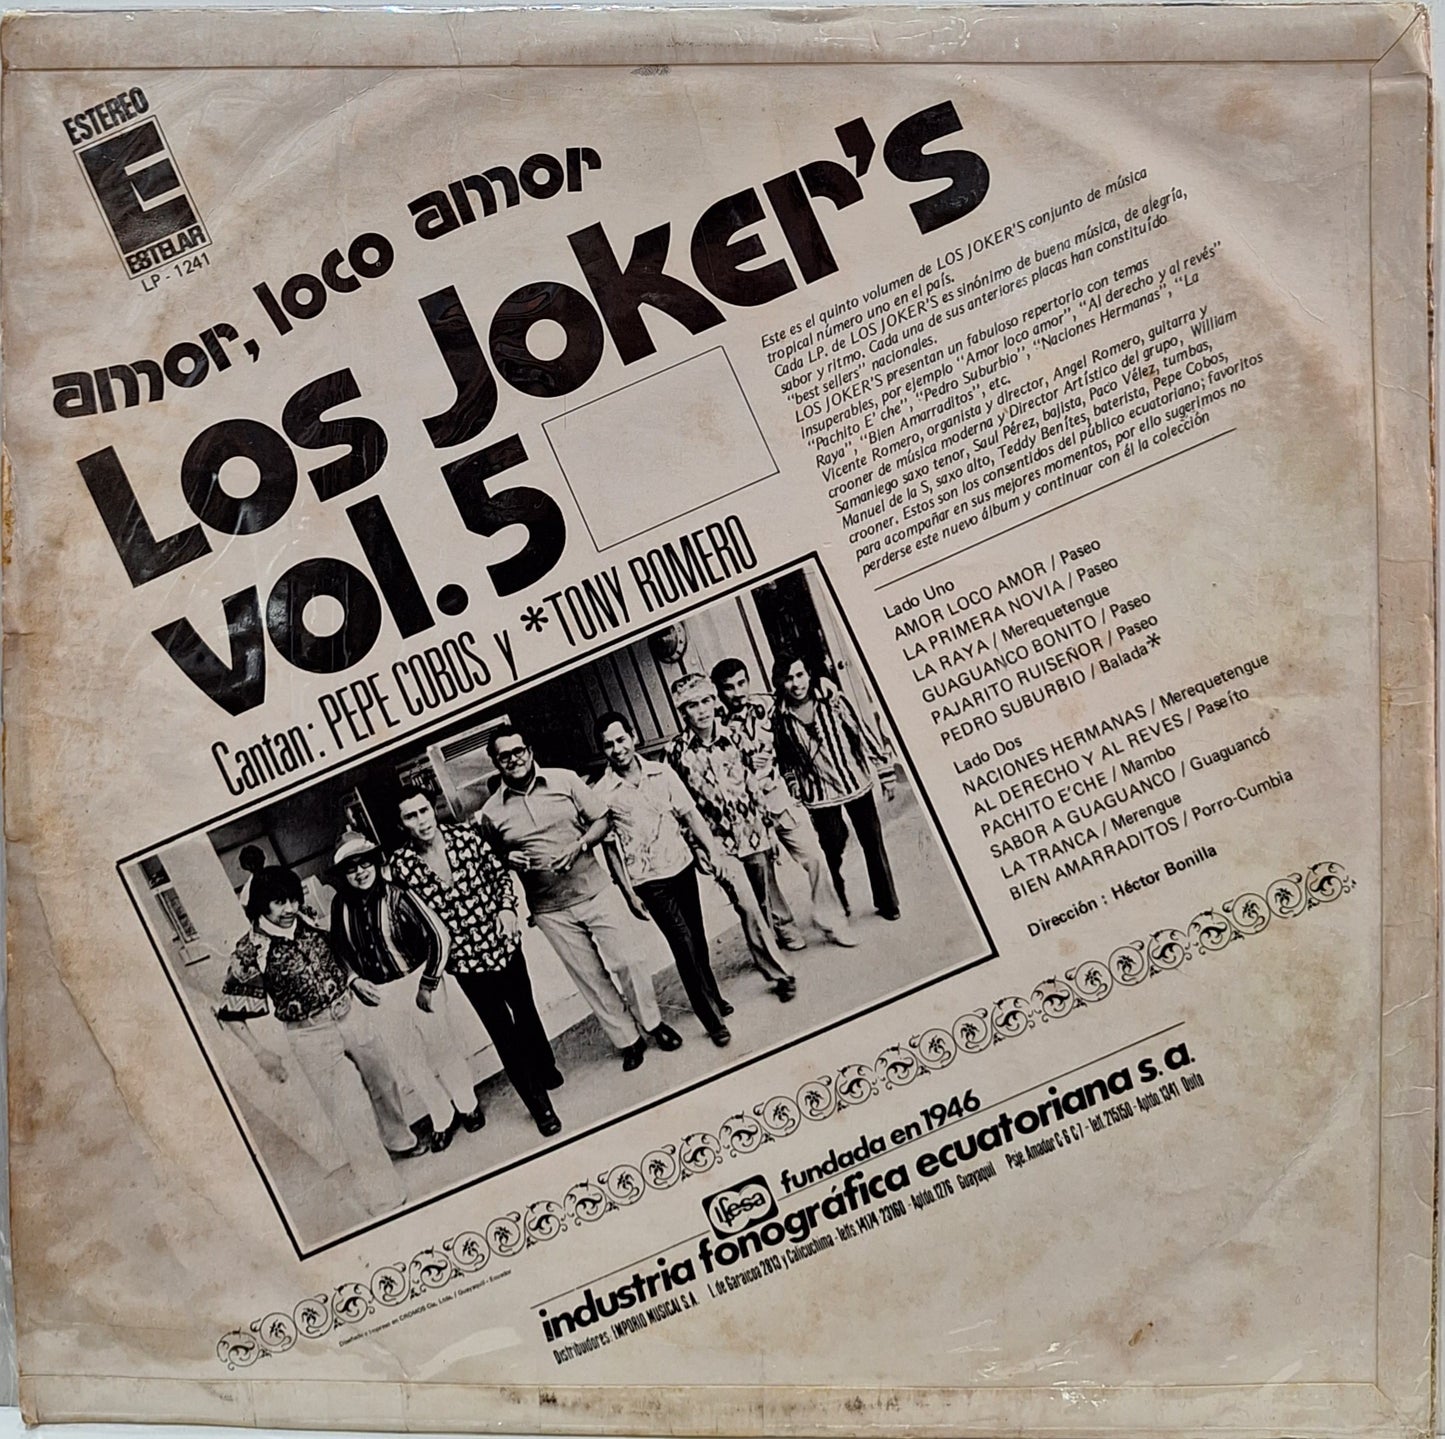 LOS JOKERS - AMOR, LOCO AMOR VOL.5  LP